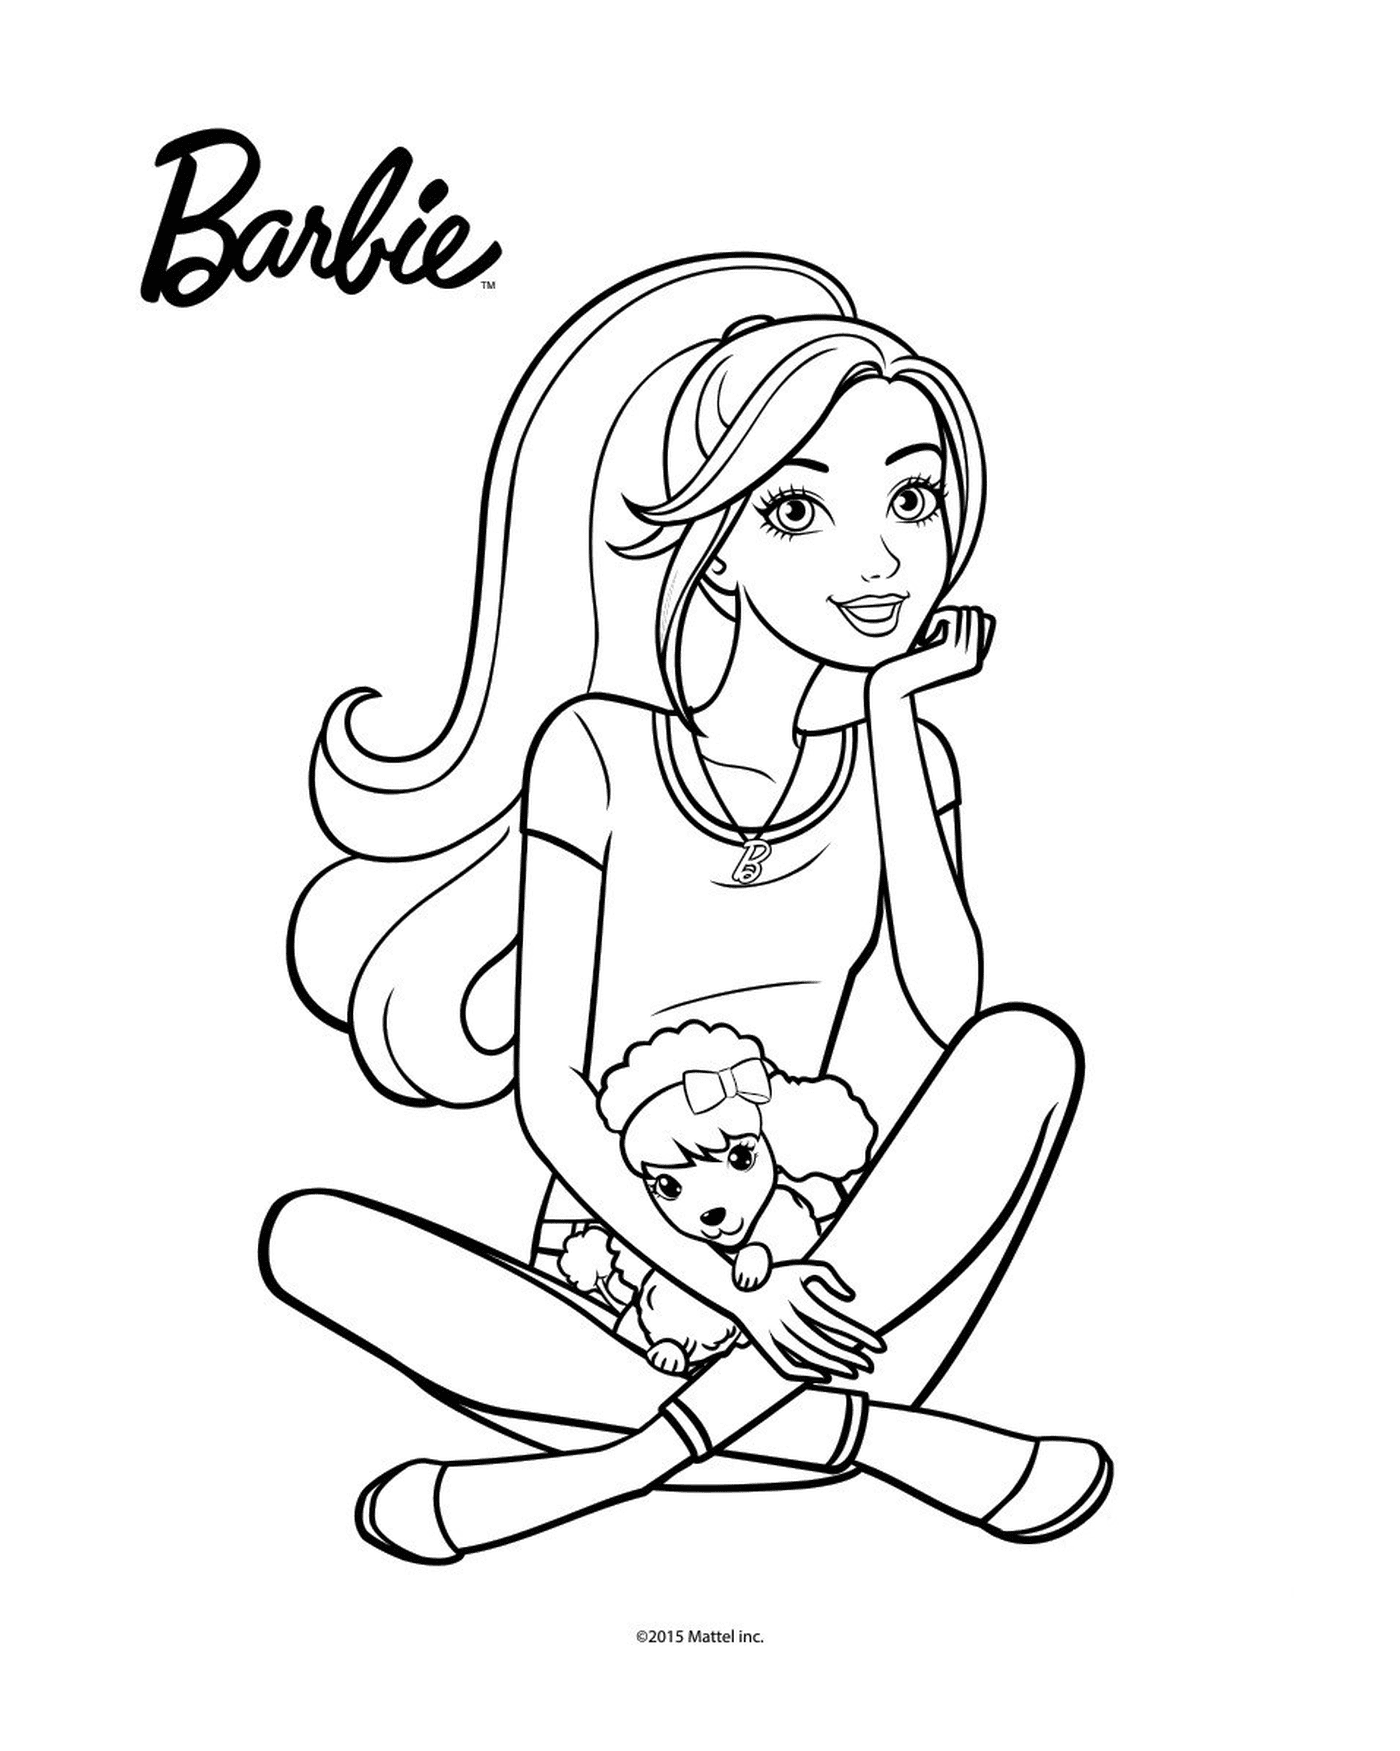  Barbie sitzen auf dem Boden mit einer Puppe 